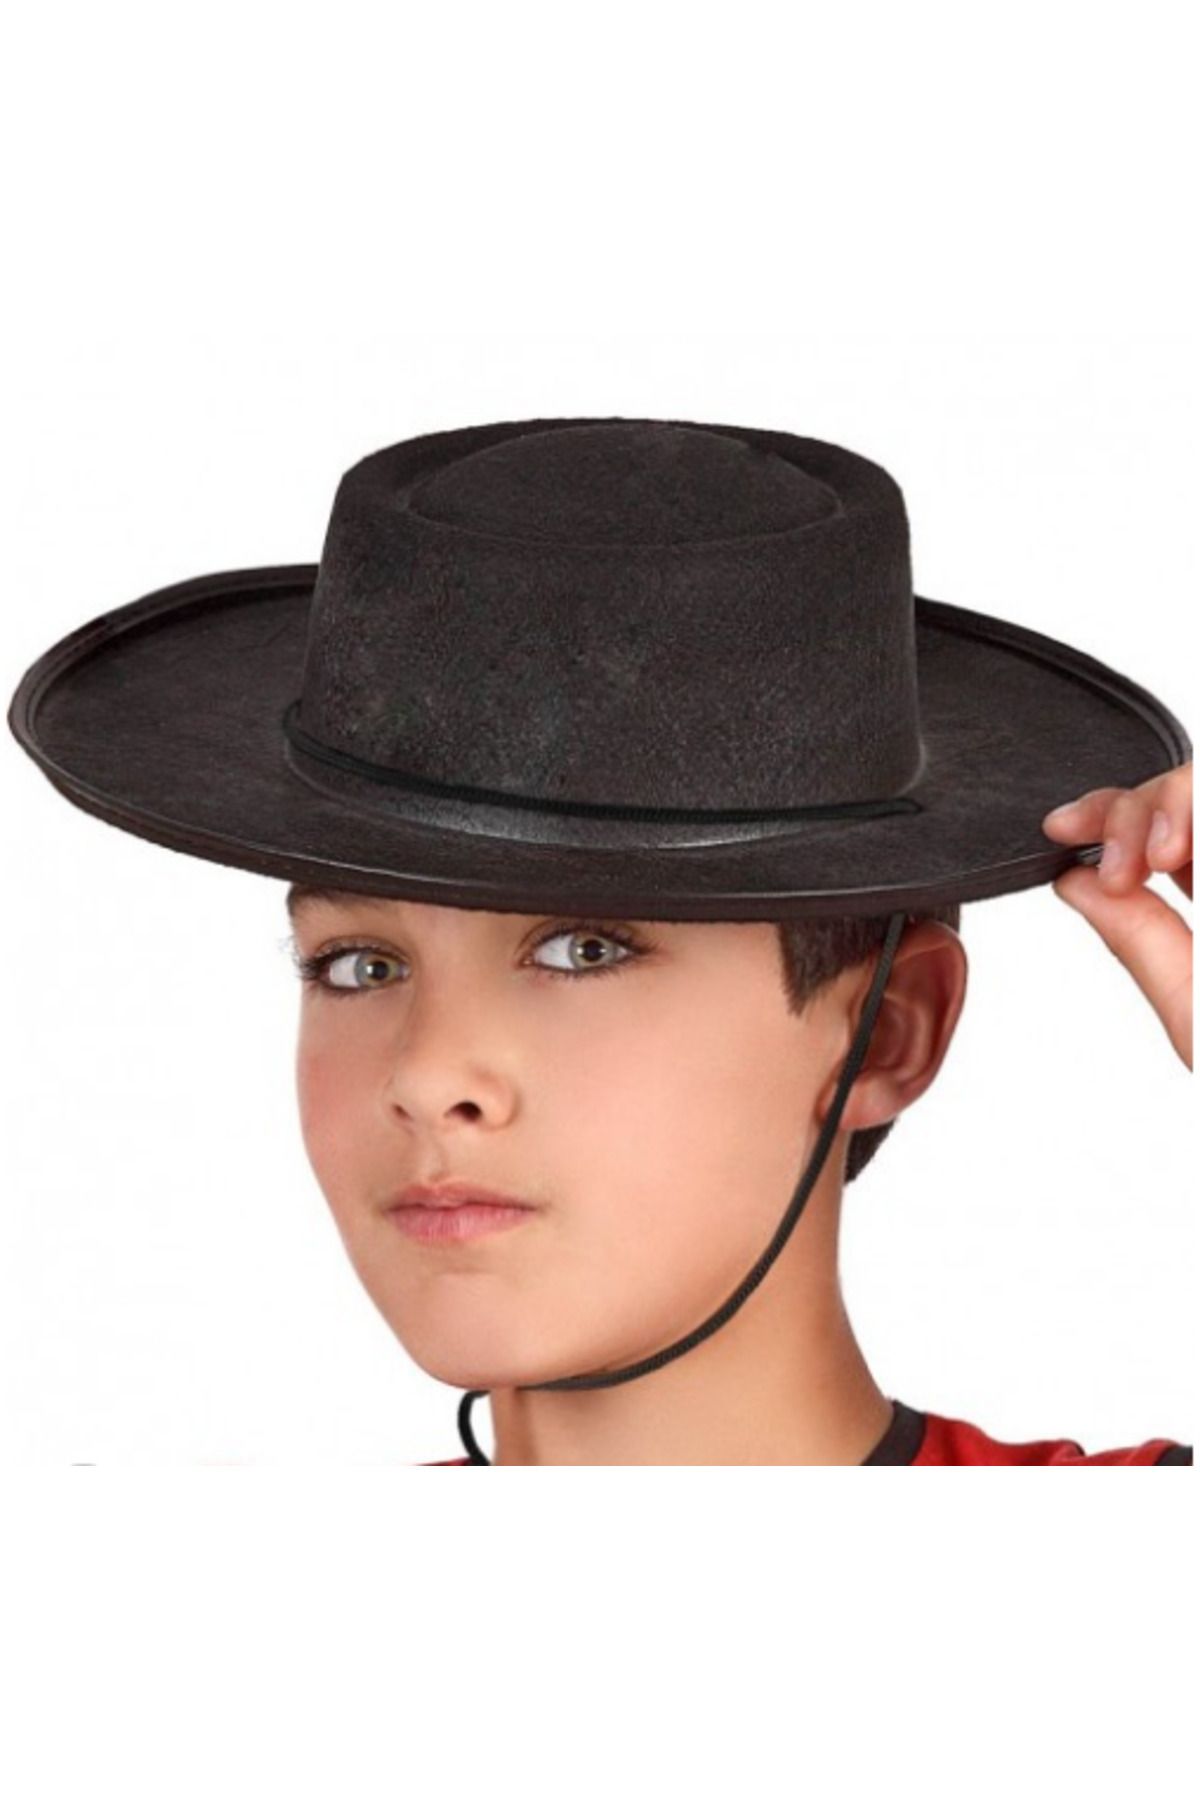 MENBOX CLZ192 Siyah Renk Keçe Flamenko Şapkası Çocuk Boy (4172)